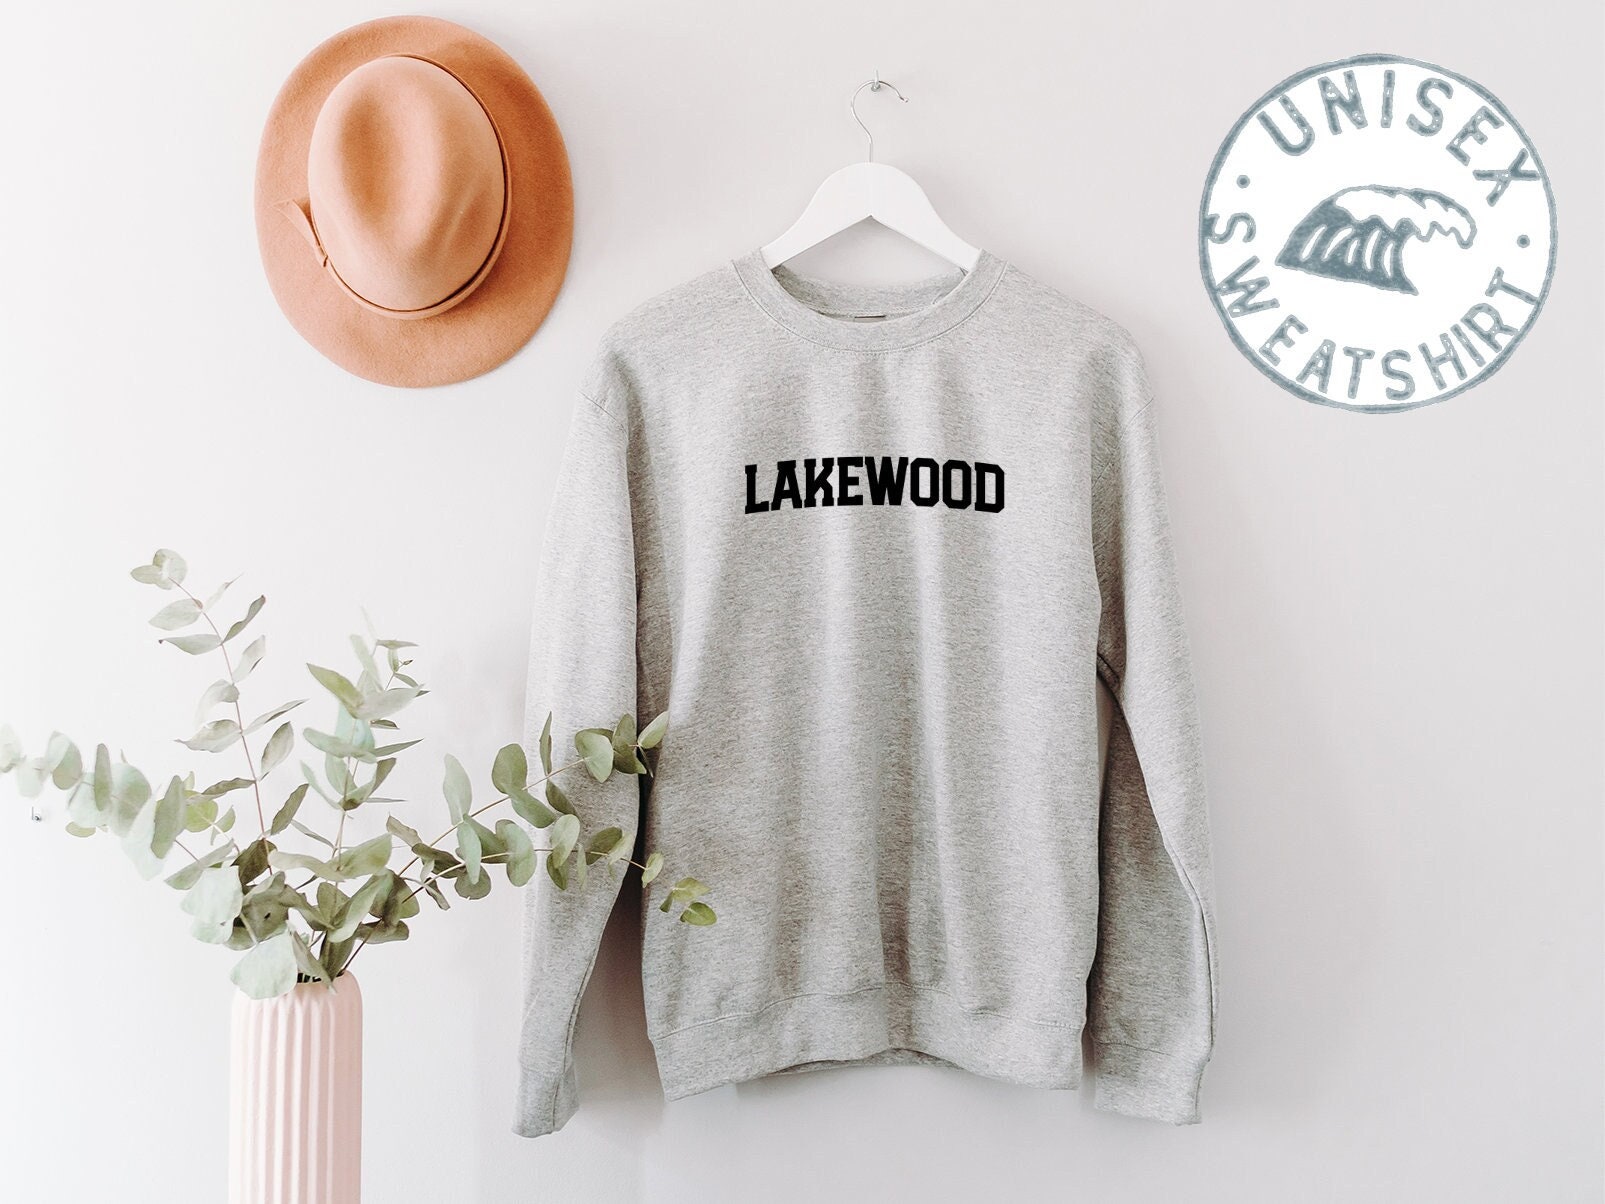 Lakewood Ohio Nj Wa Heimatstadt Umzug Sweatshirt, Lustige Pullover Shirt, Geburtstagsgeschenke Für Männer Und Frauen von 22ndOfOctober